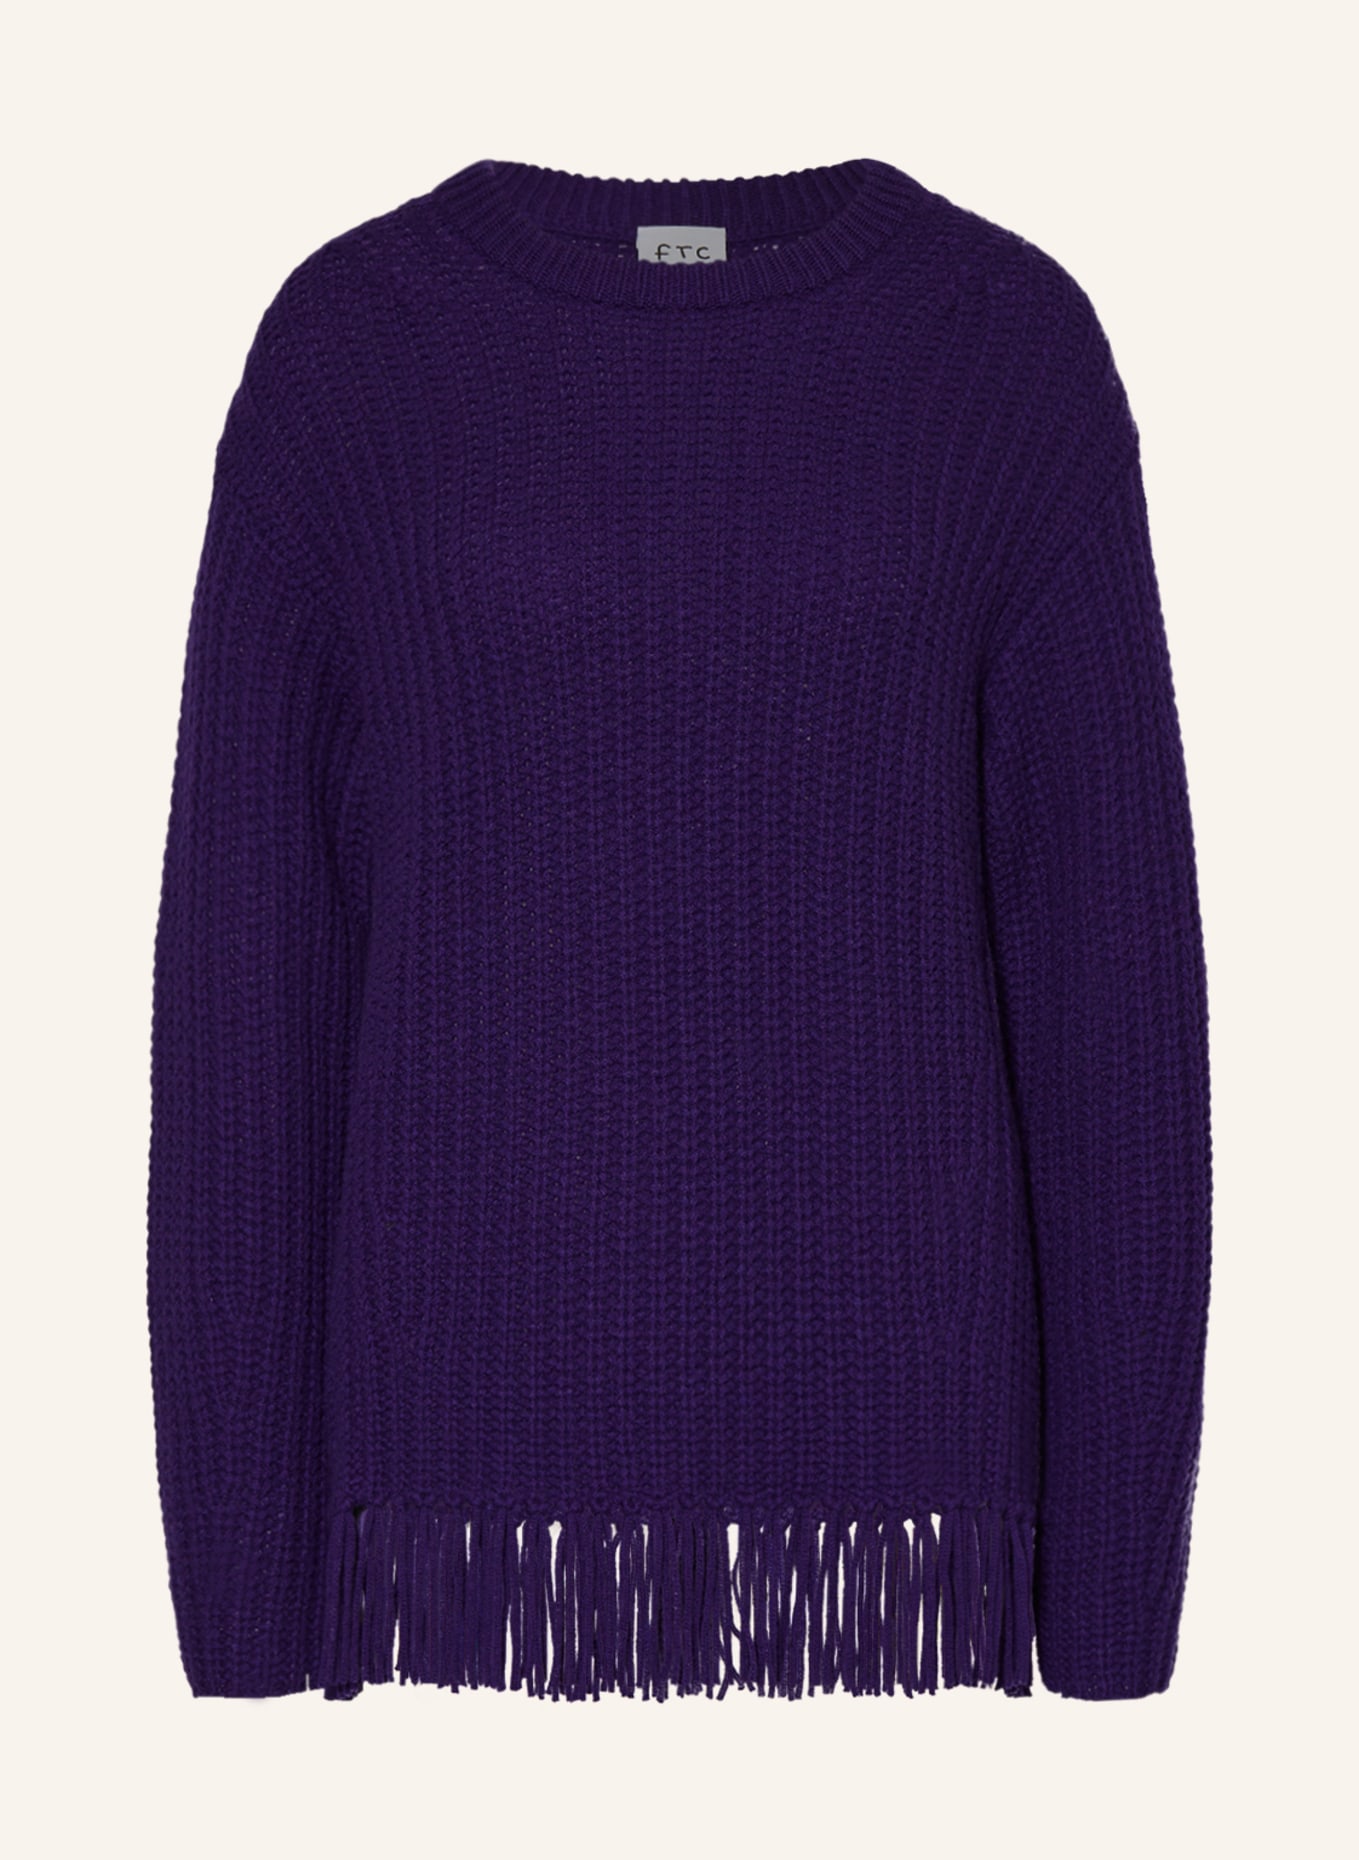 FTC CASHMERE Cashmere sweater, Color: DARK PURPLE (Image 1)